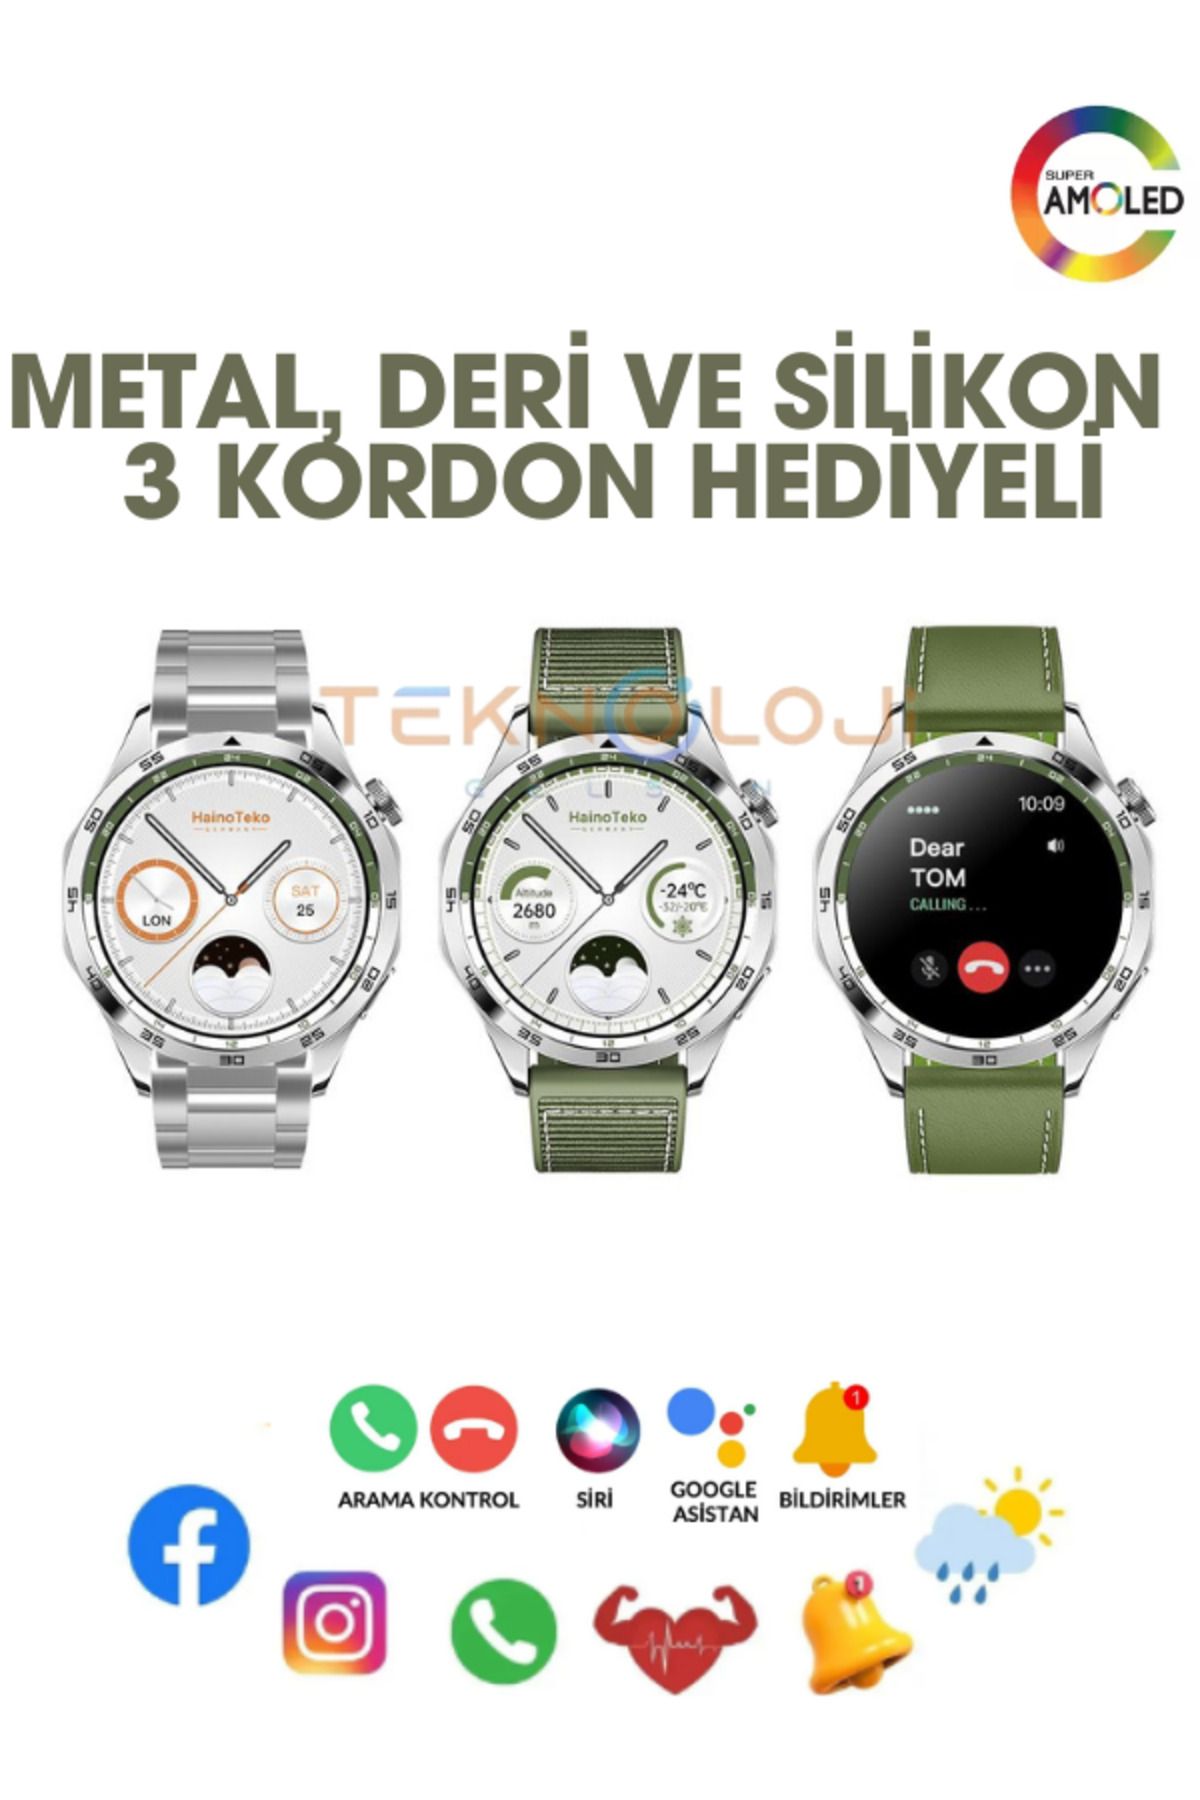 Teknoloji Gelsin GT4 Akıllı Saat Yuvarlak Kasa Amoled Ekran Smart Watch Türkçe Menü Ios ve Android Uyum 3 Kordonlu